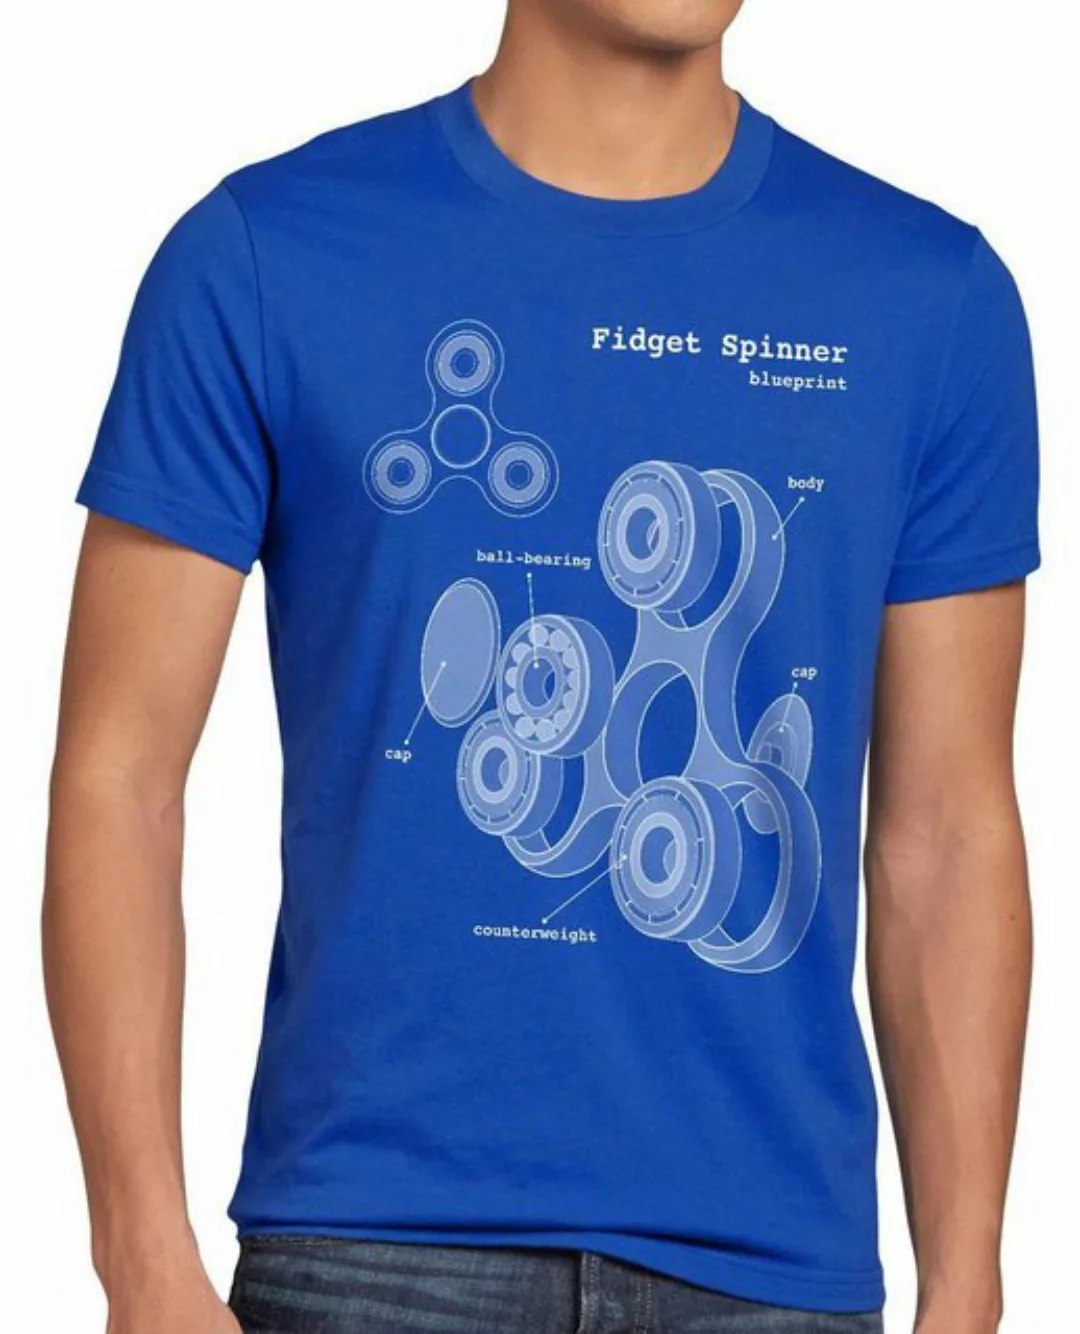 style3 Print-Shirt Herren T-Shirt Fidget Hand Spinner Handspinner Toy Blaup günstig online kaufen